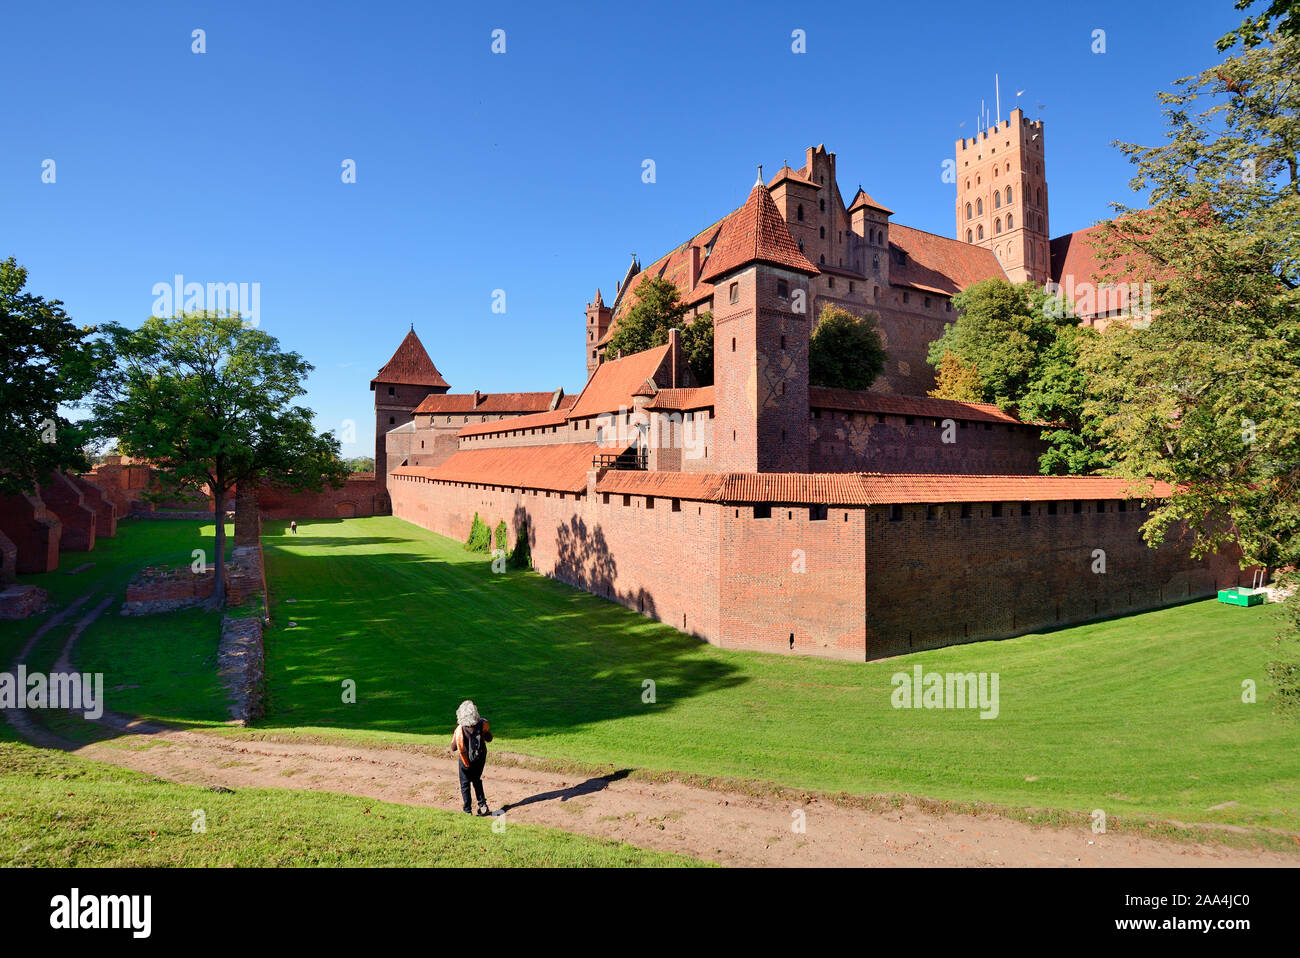 Le château de Malbork du XIIIe siècle, fondé par les Chevaliers de l'ordre teutonique, site classé au patrimoine mondial de l'UNESCO. Pologne Banque D'Images